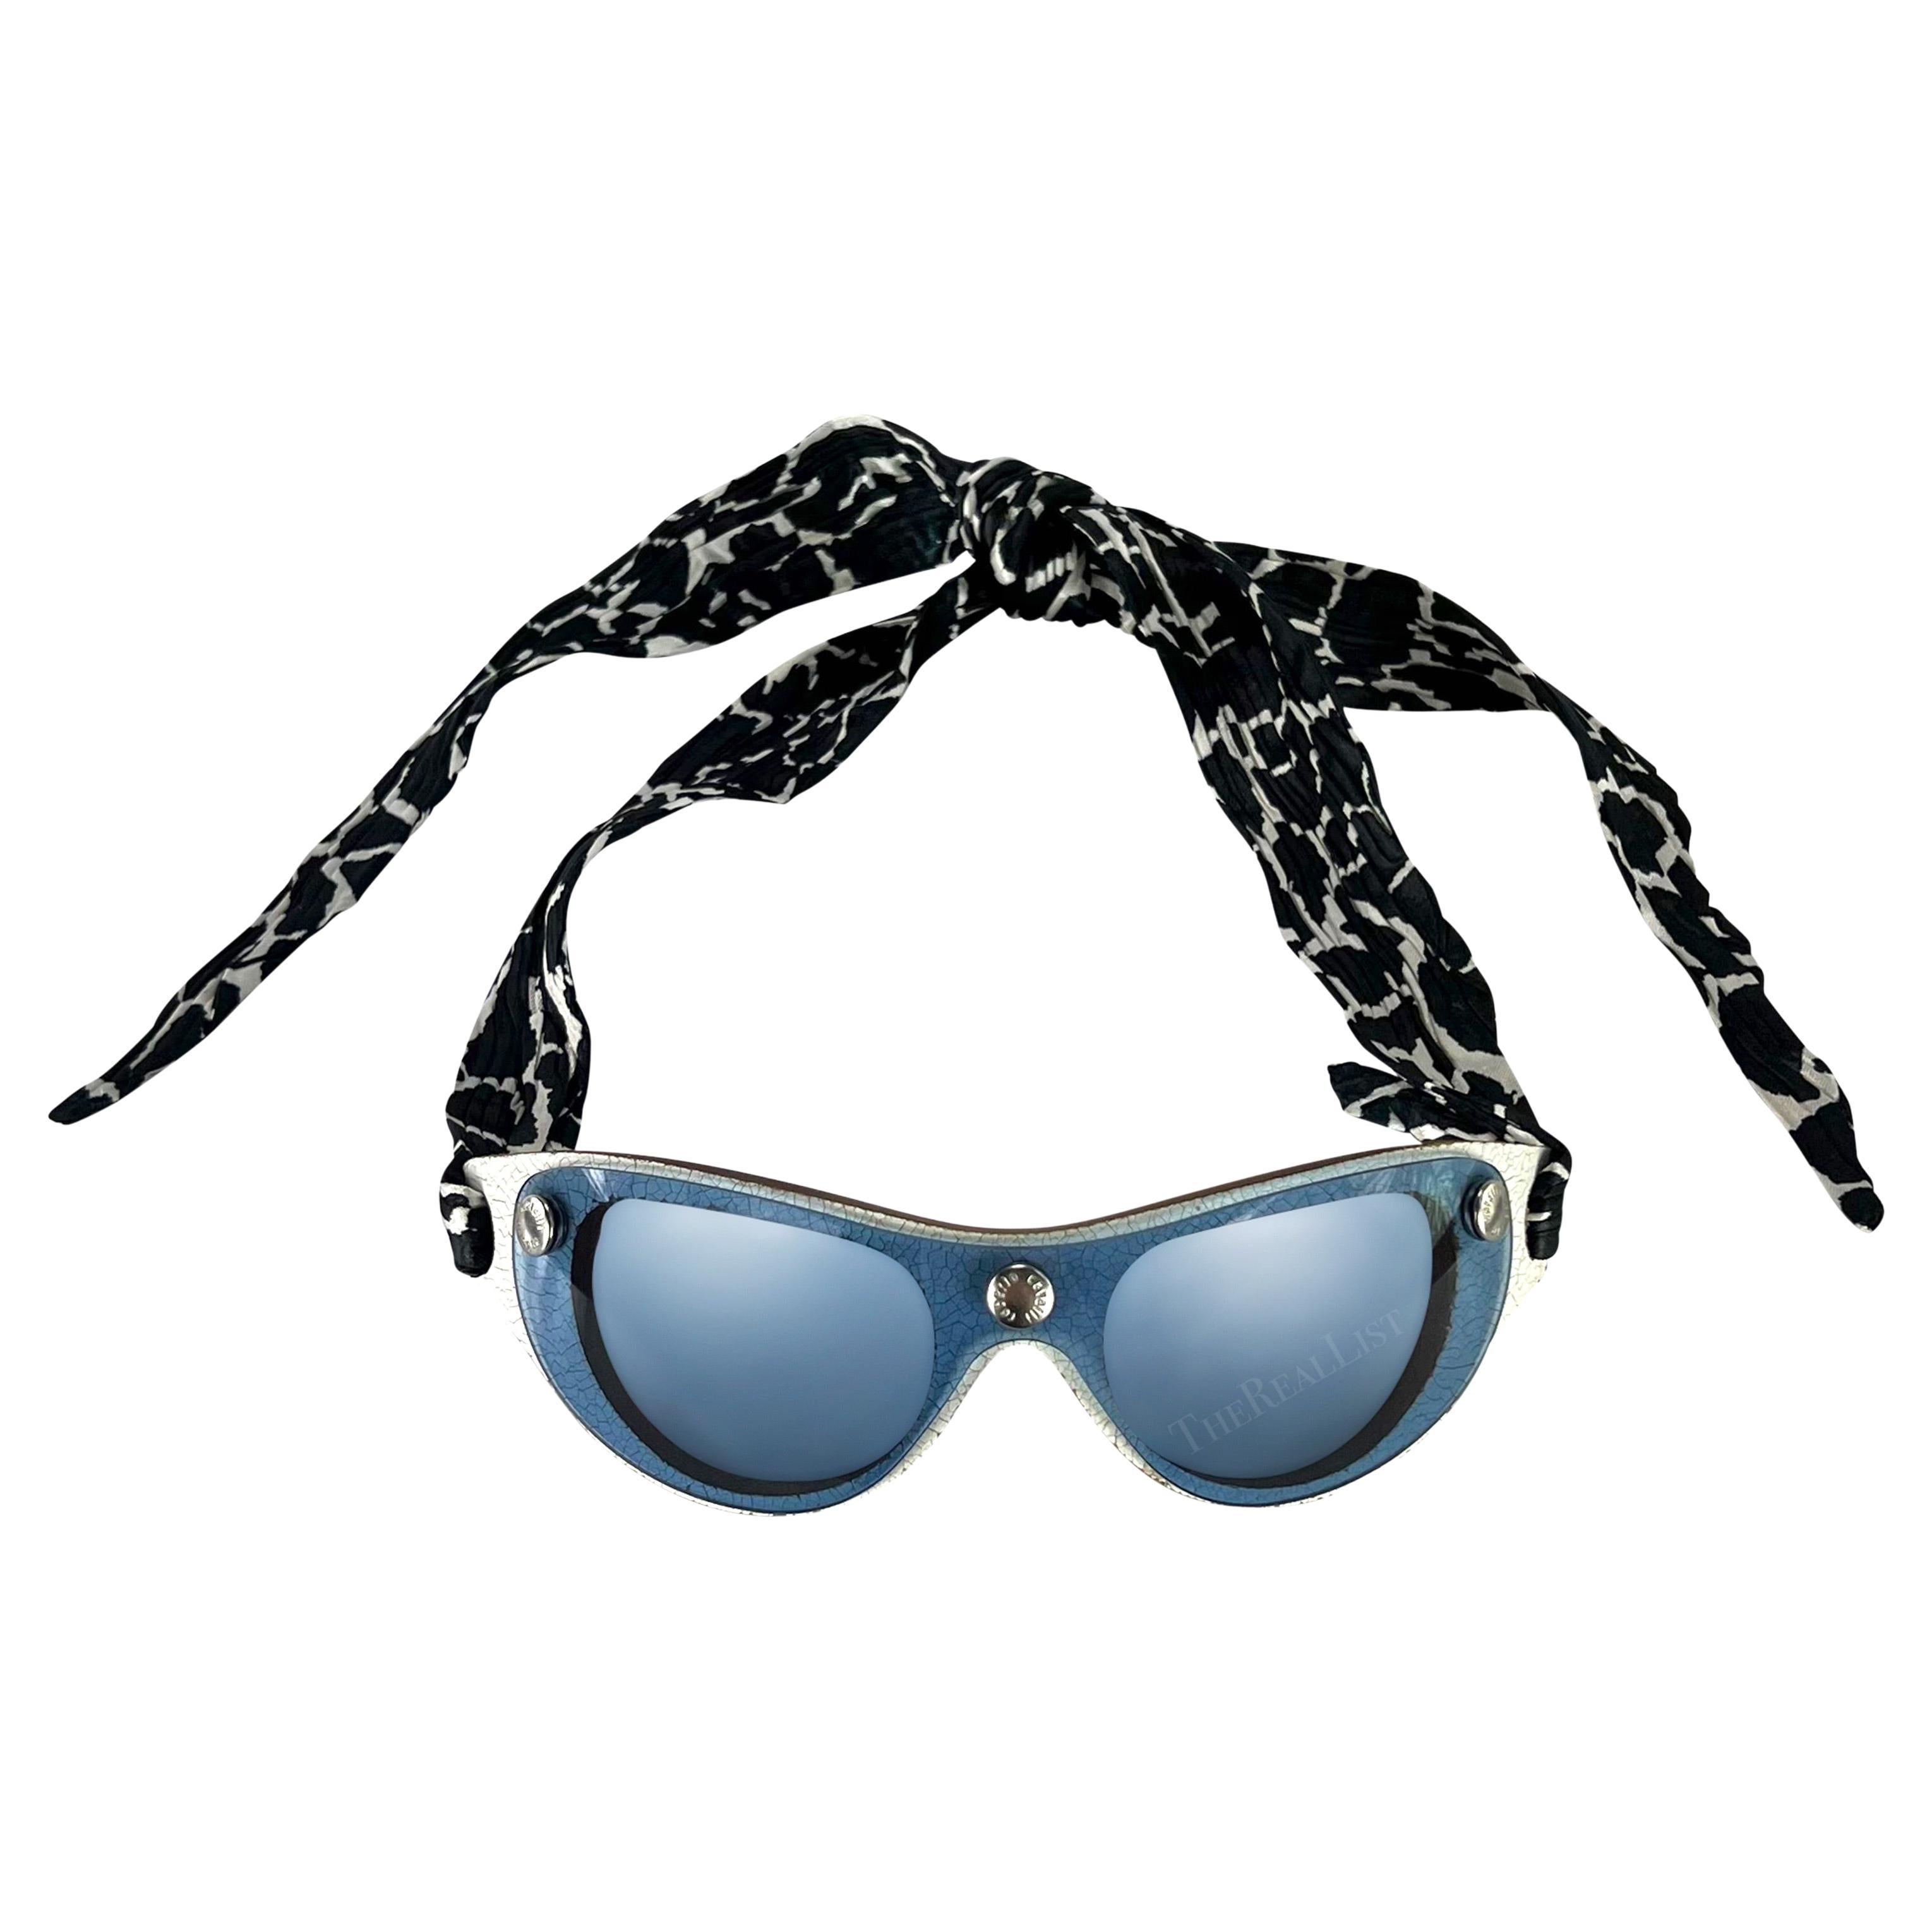 S/S 2001 Roberto Cavalli Ad Blue Shield Silk Scarf Wrap Sunglasses For Sale